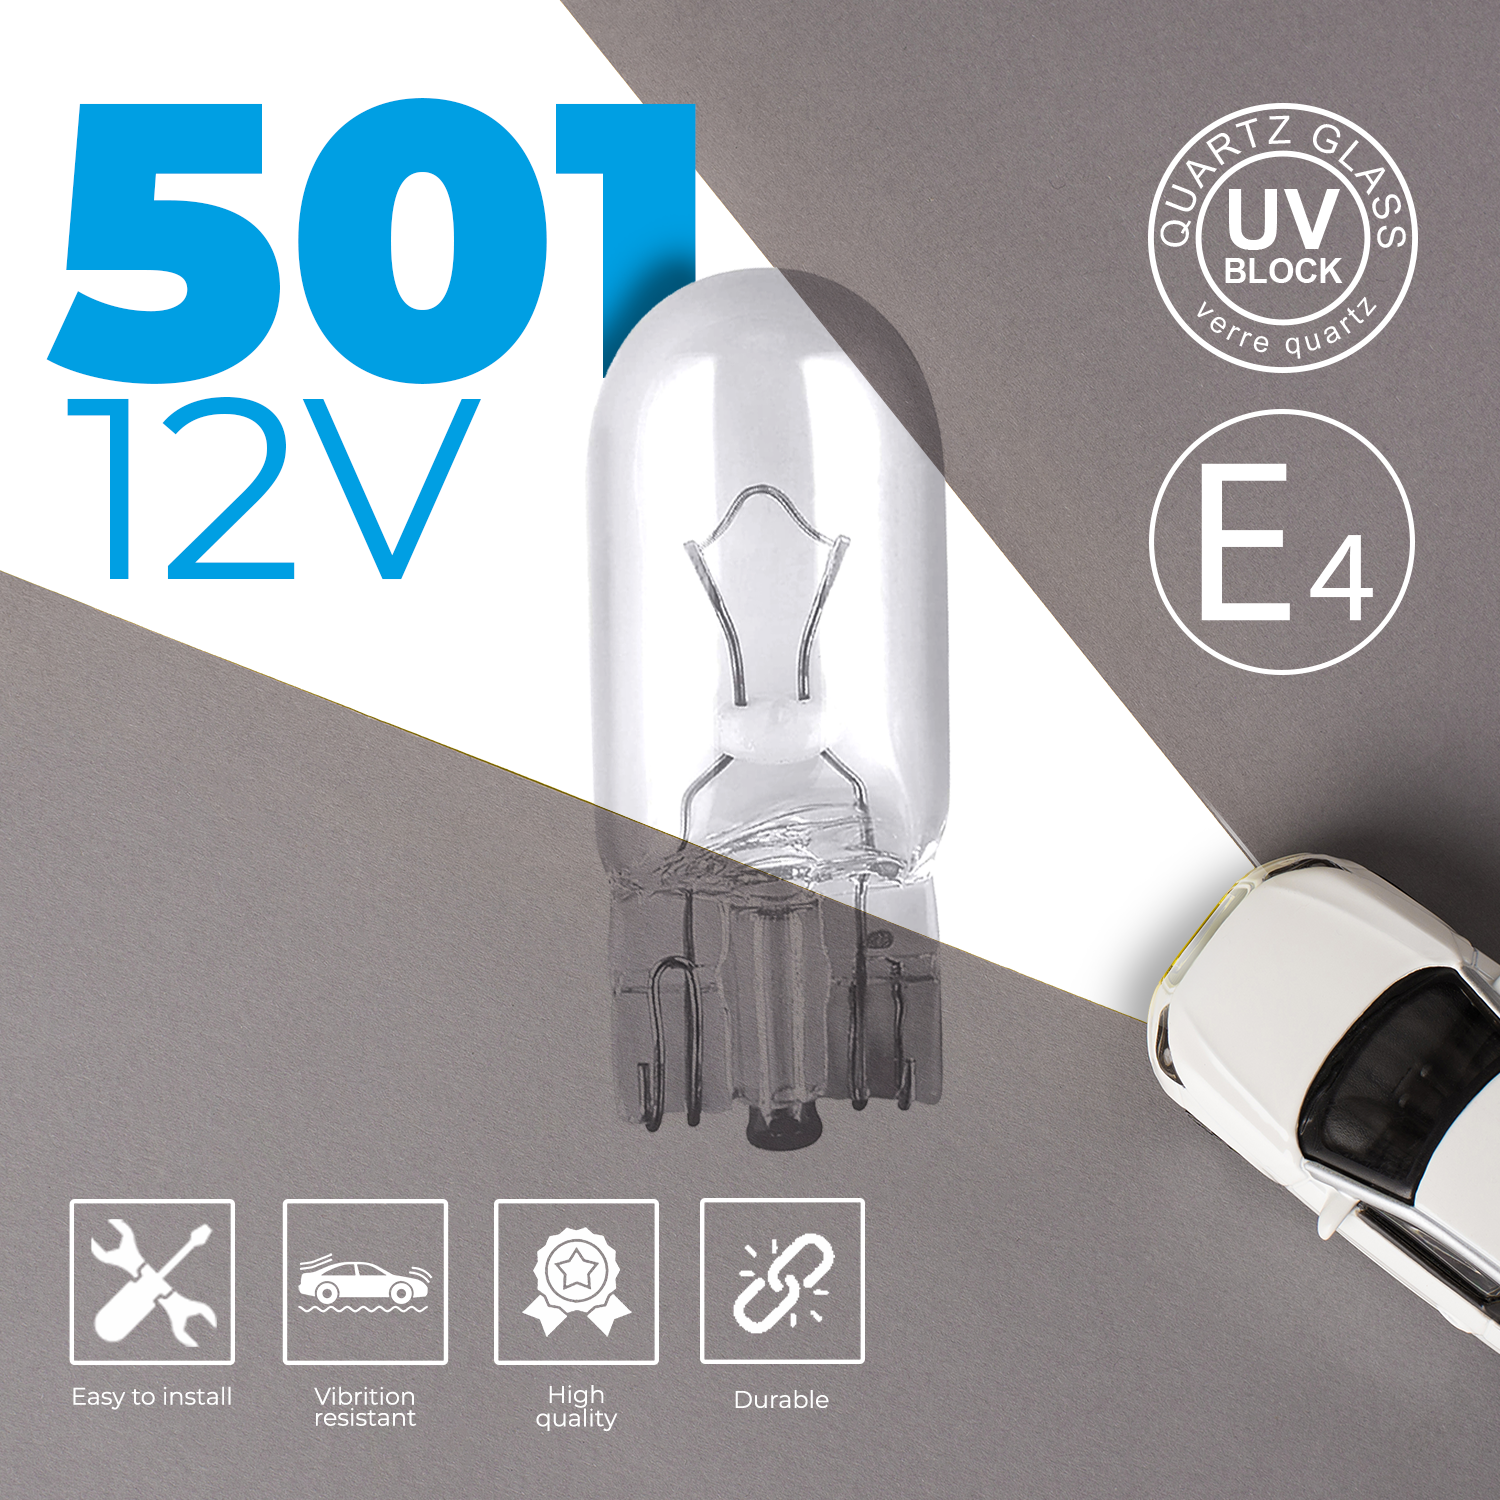 501 12V W5W Wedge Bulbs (Pack Of 10)